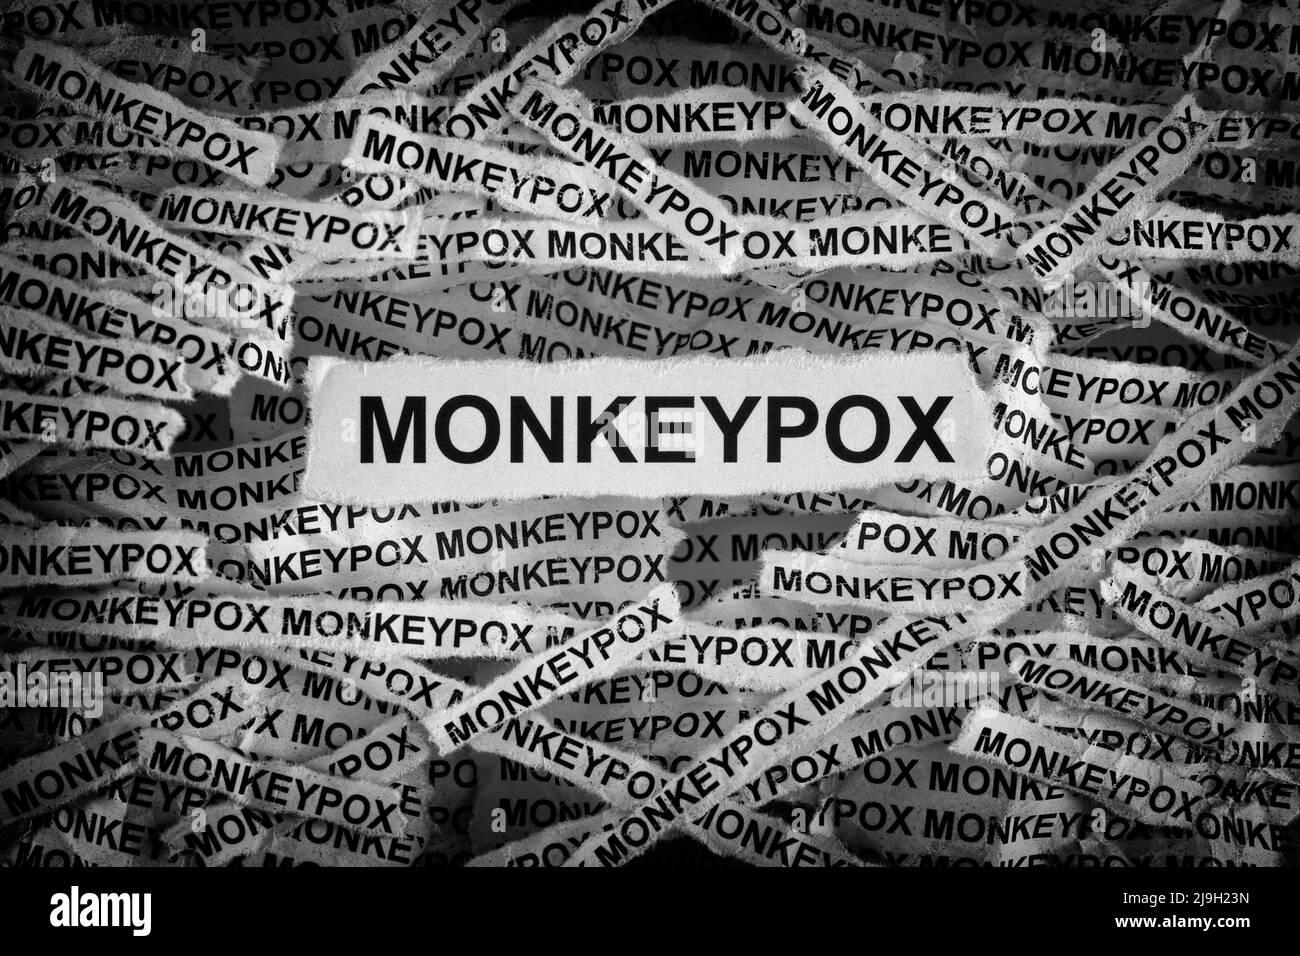 Die Streifen der Zeitung mit dem Wort monkeypox, das auf ihnen getippt wurde. Monkeypox ist eine Infektionskrankheit, die durch das Monkeypox-Virus verursacht wird. Schwarz und Weiß. Nahaufnahme Stockfoto